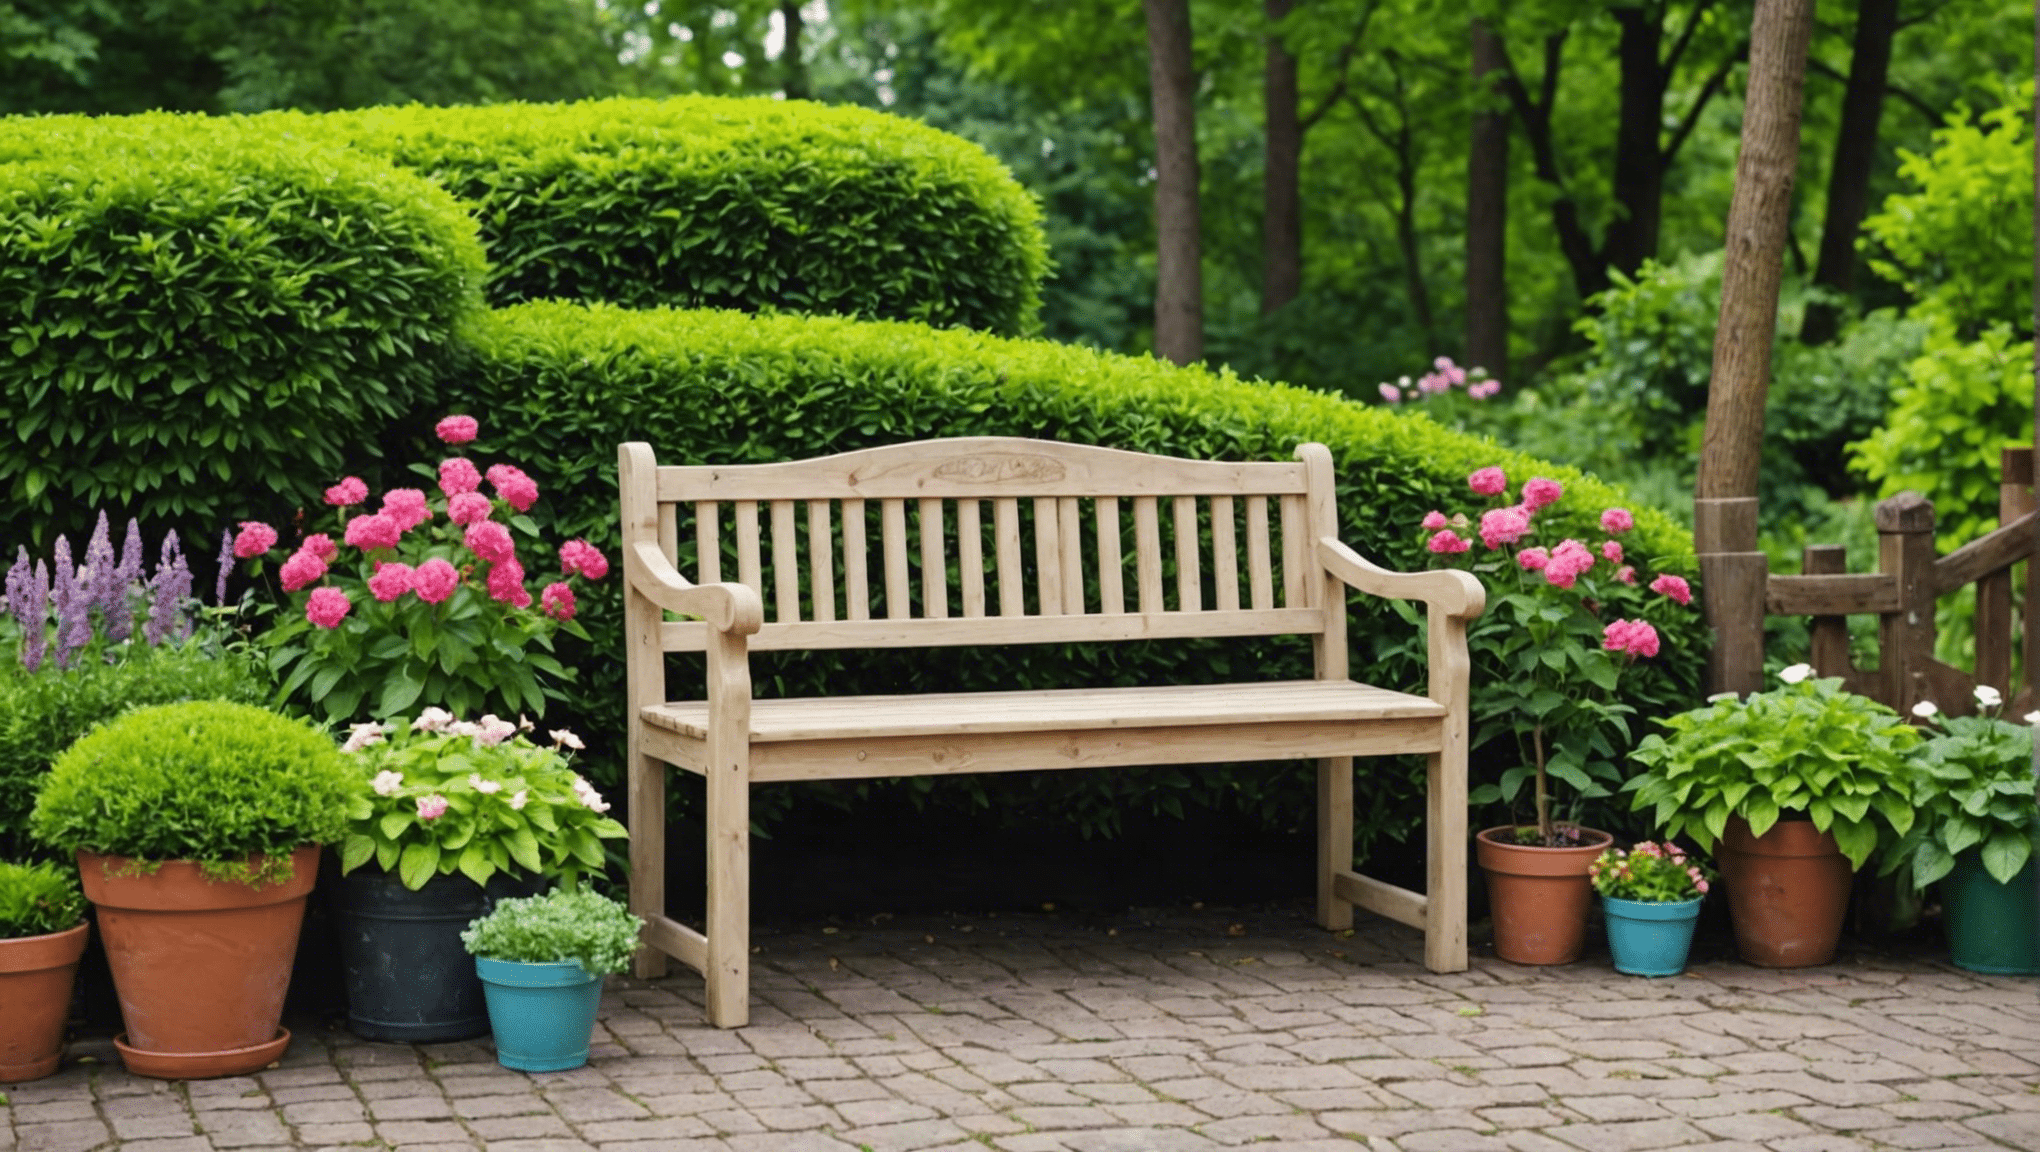 descubra ideias inspiradoras e funcionais de bancos de jardinagem para ajudar a trazer criatividade ao seu espaço ao ar livre.